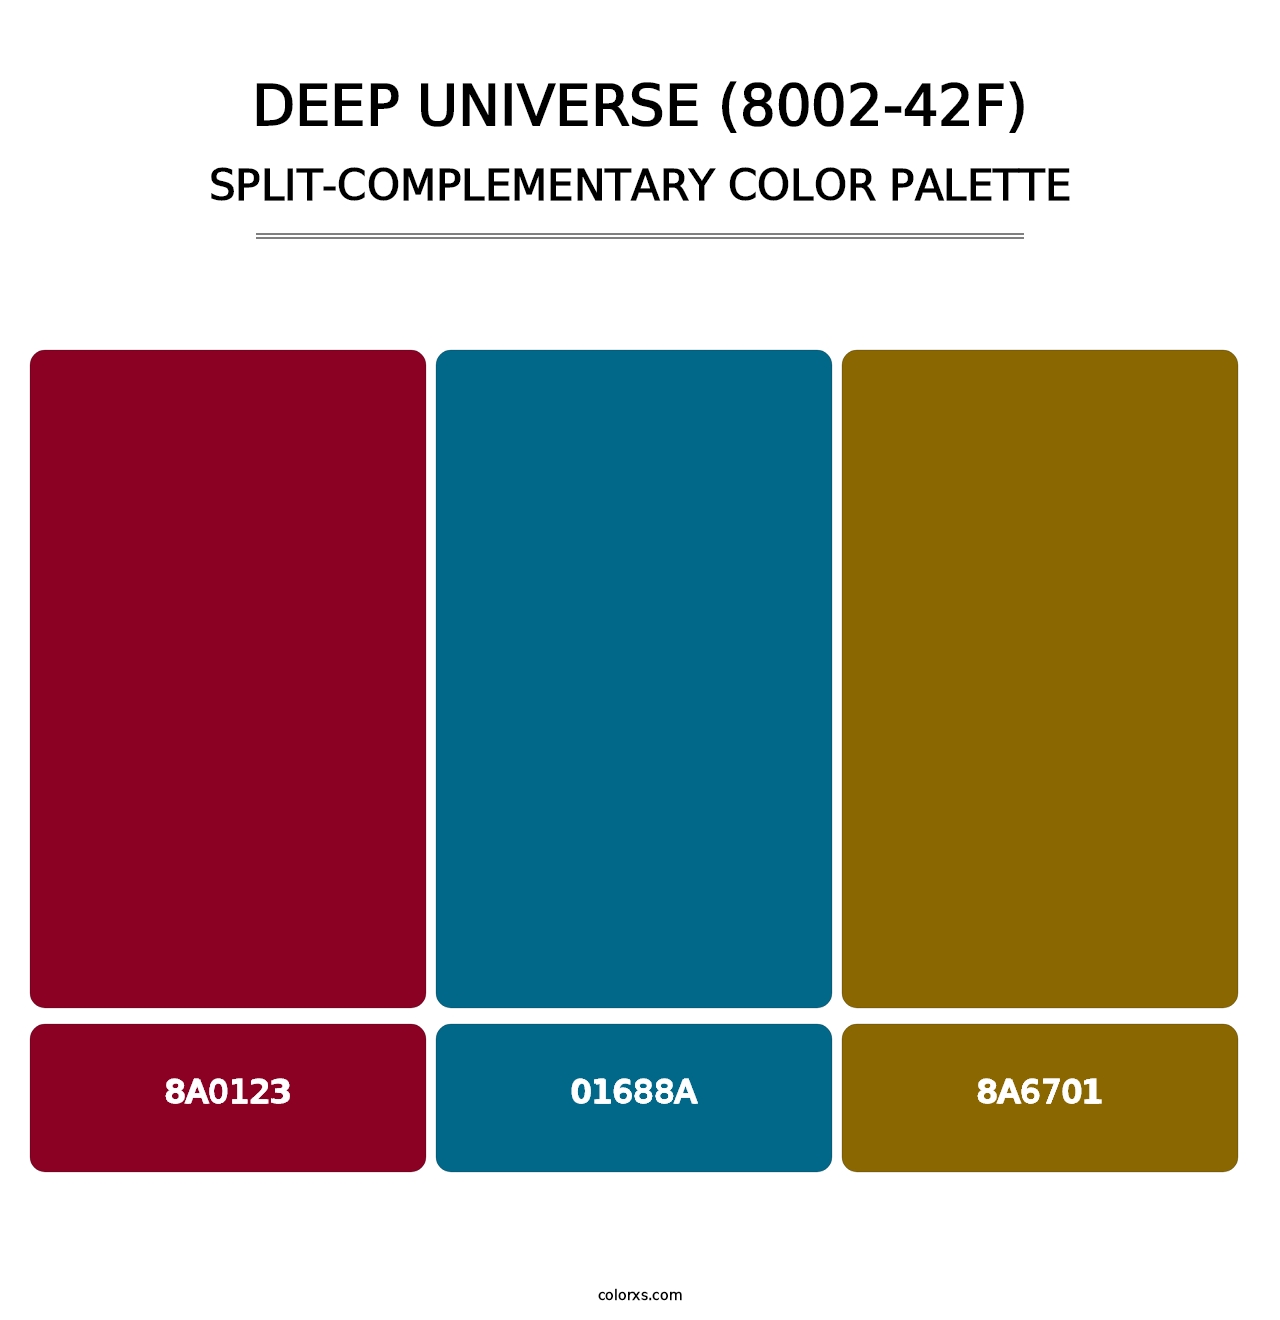 Deep Universe (8002-42F) - Split-Complementary Color Palette